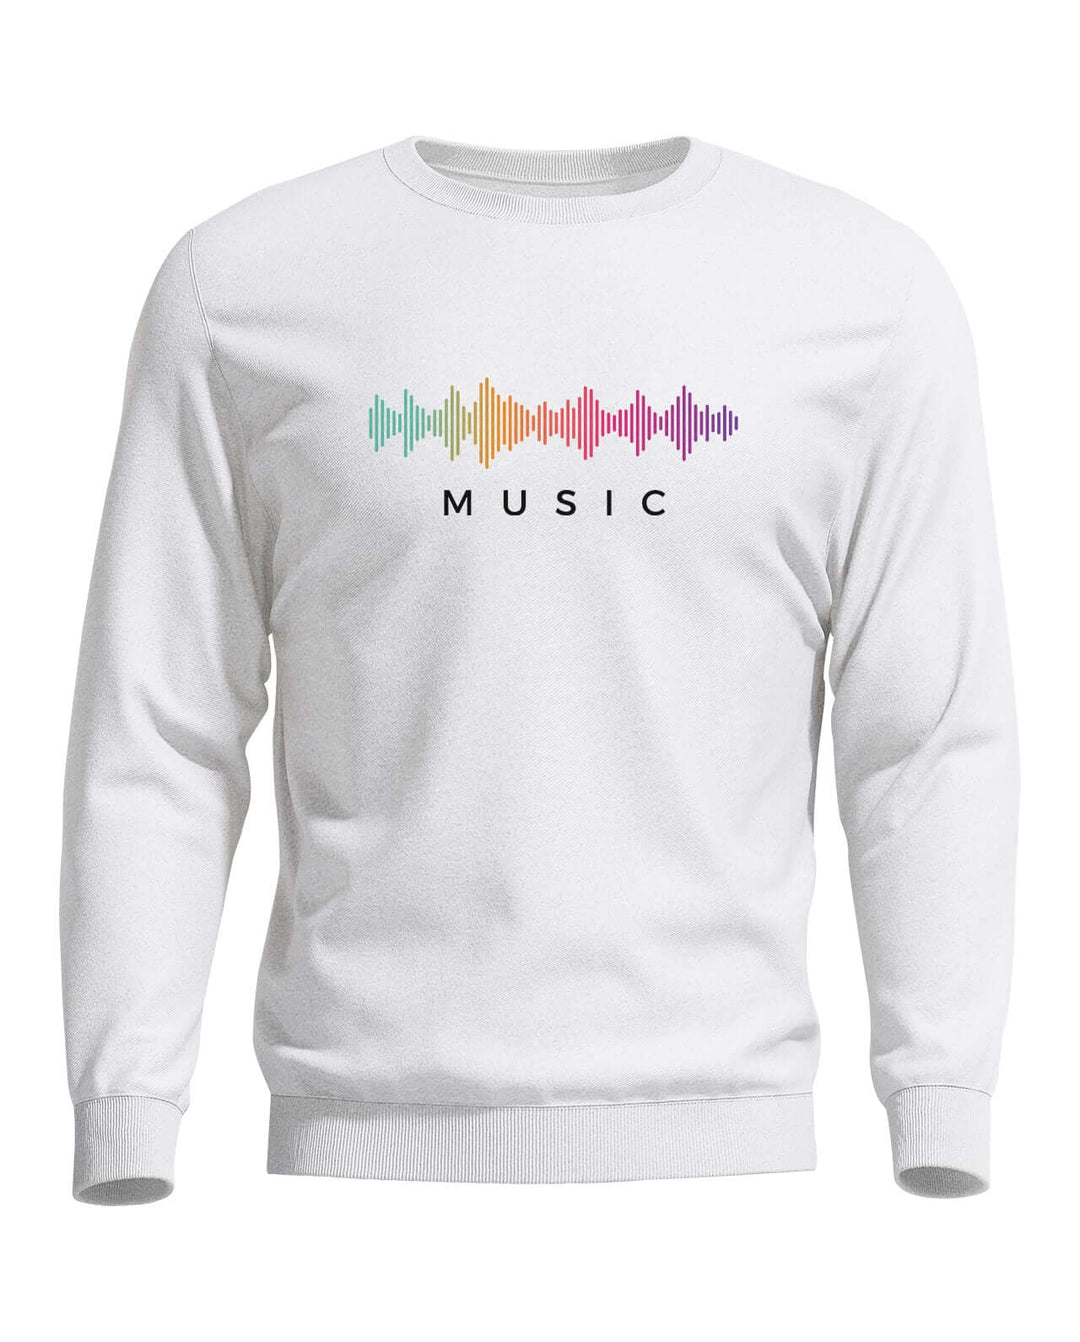 Music Sweatshirt